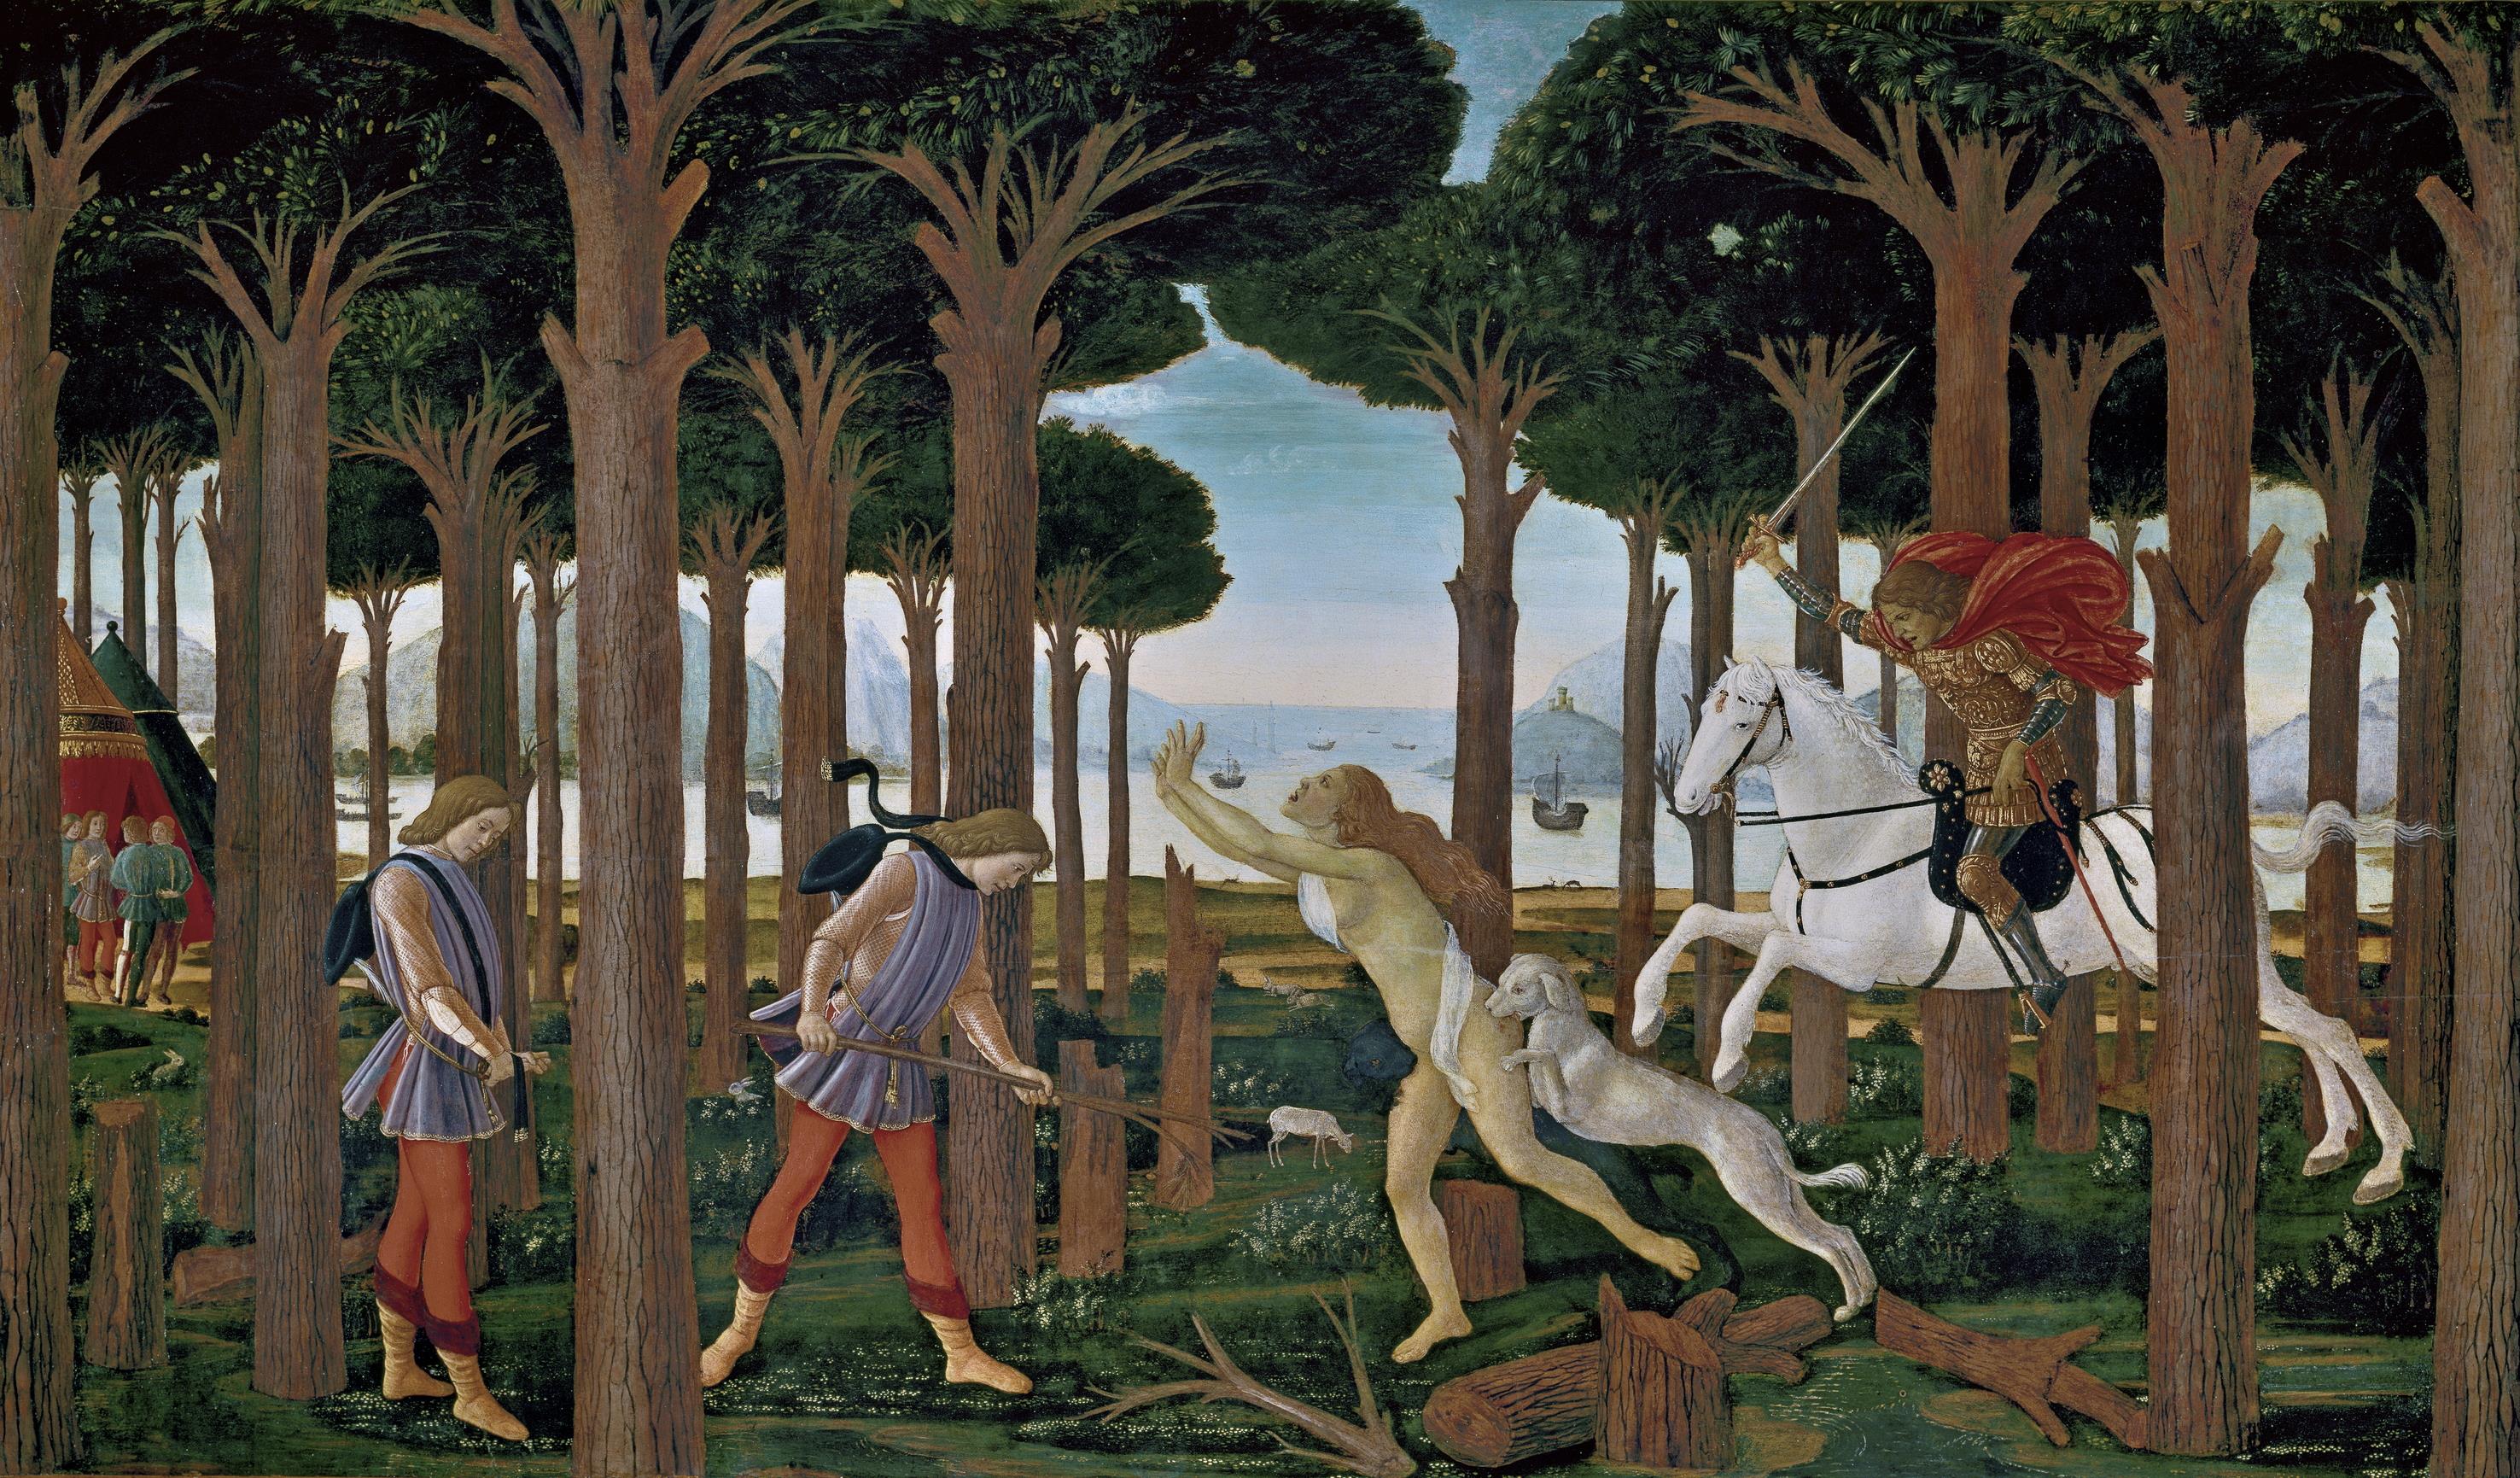 Comentem una obra lligada amb les pandèmies: Els Botticelli del Prado del Decamerò